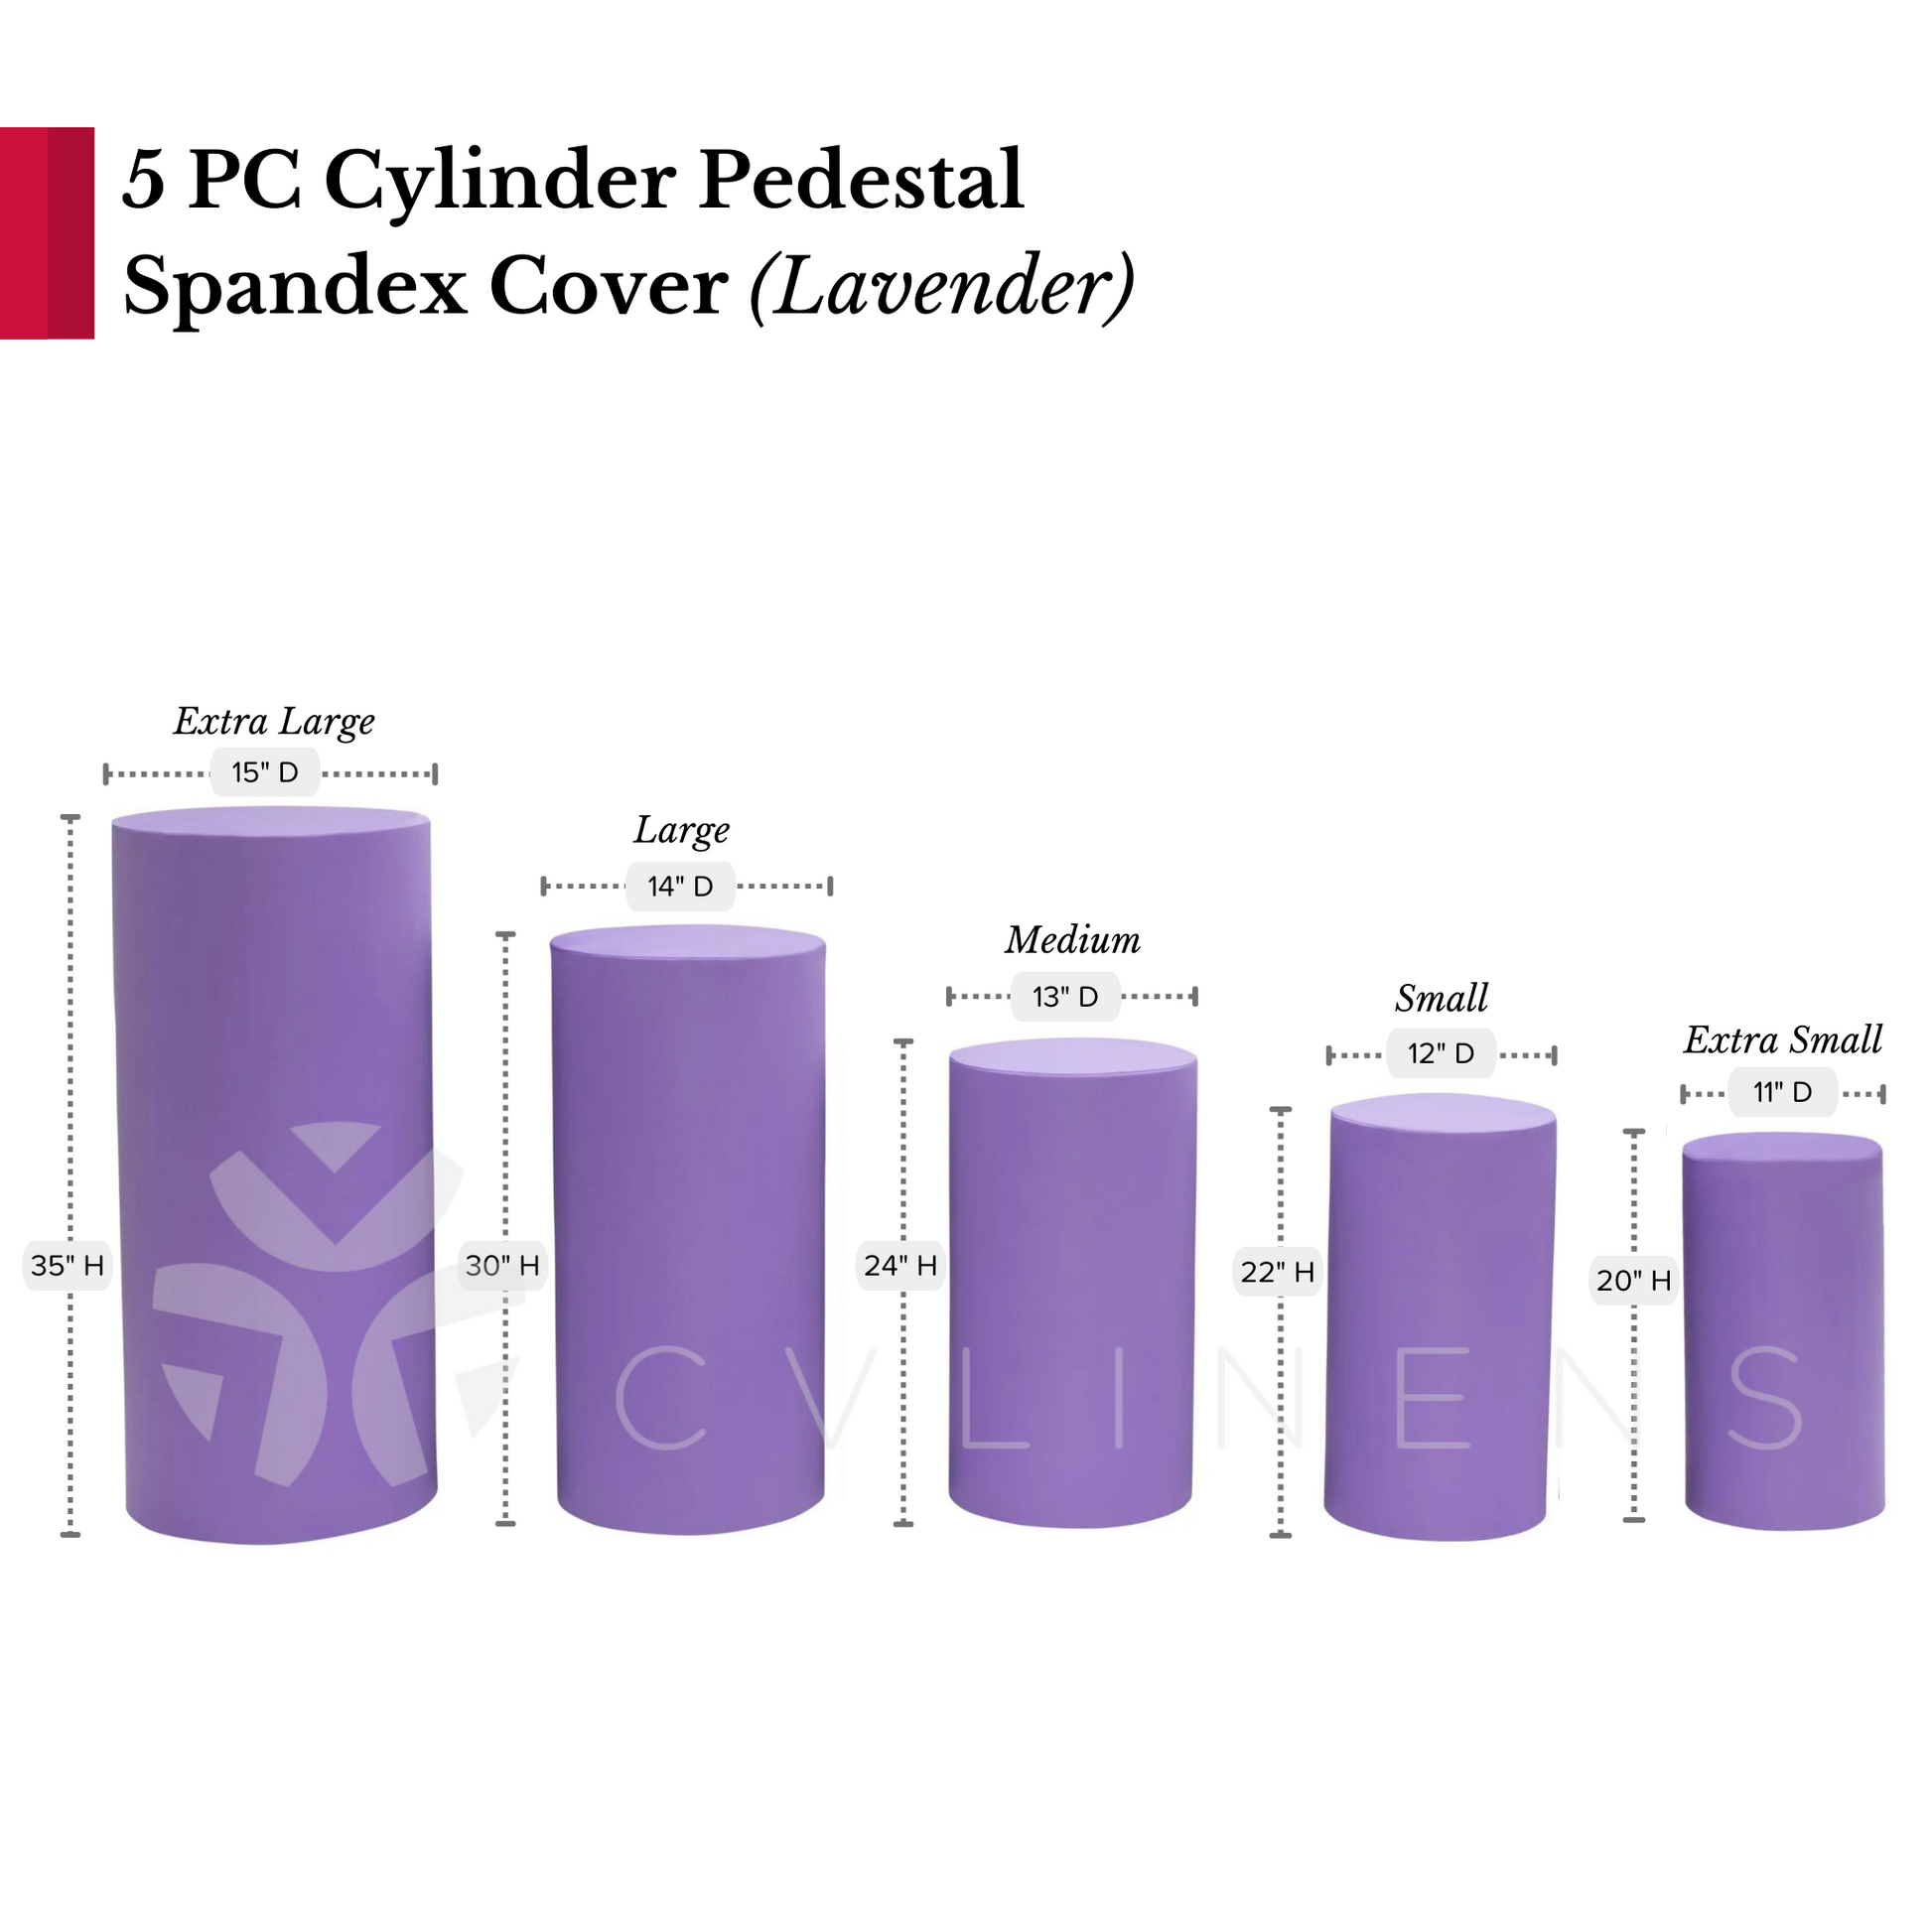 Spandex Pillar Covers for Metal Cylinder Pedestal Stands 5 pcs/set - Lavender